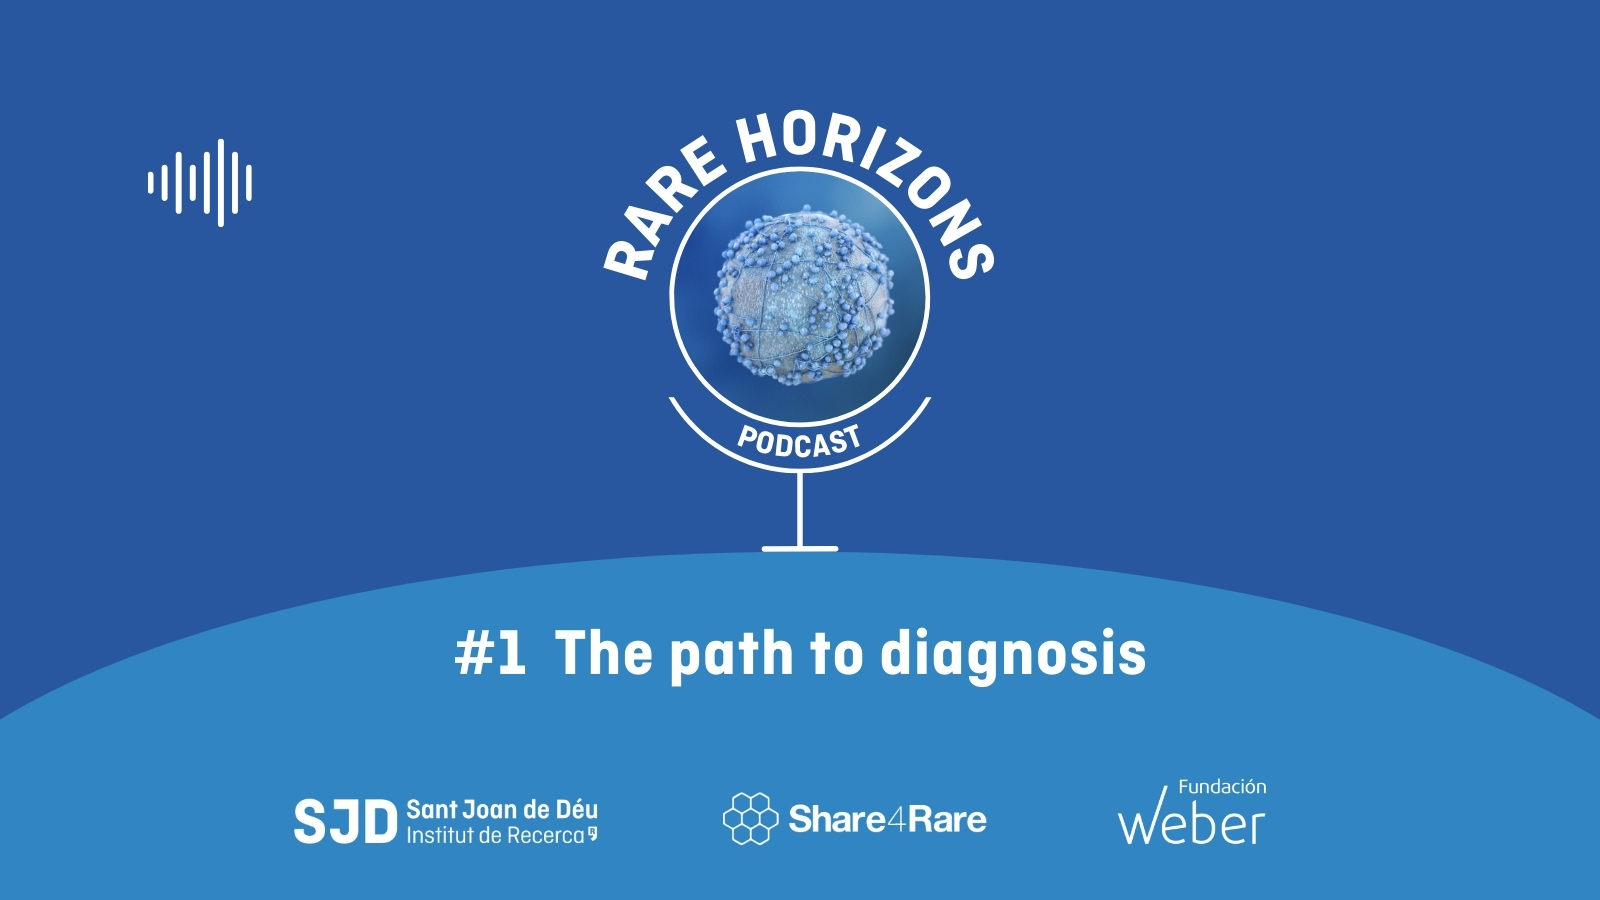 rare horizons podcast share4rare episode 1 diagnosis